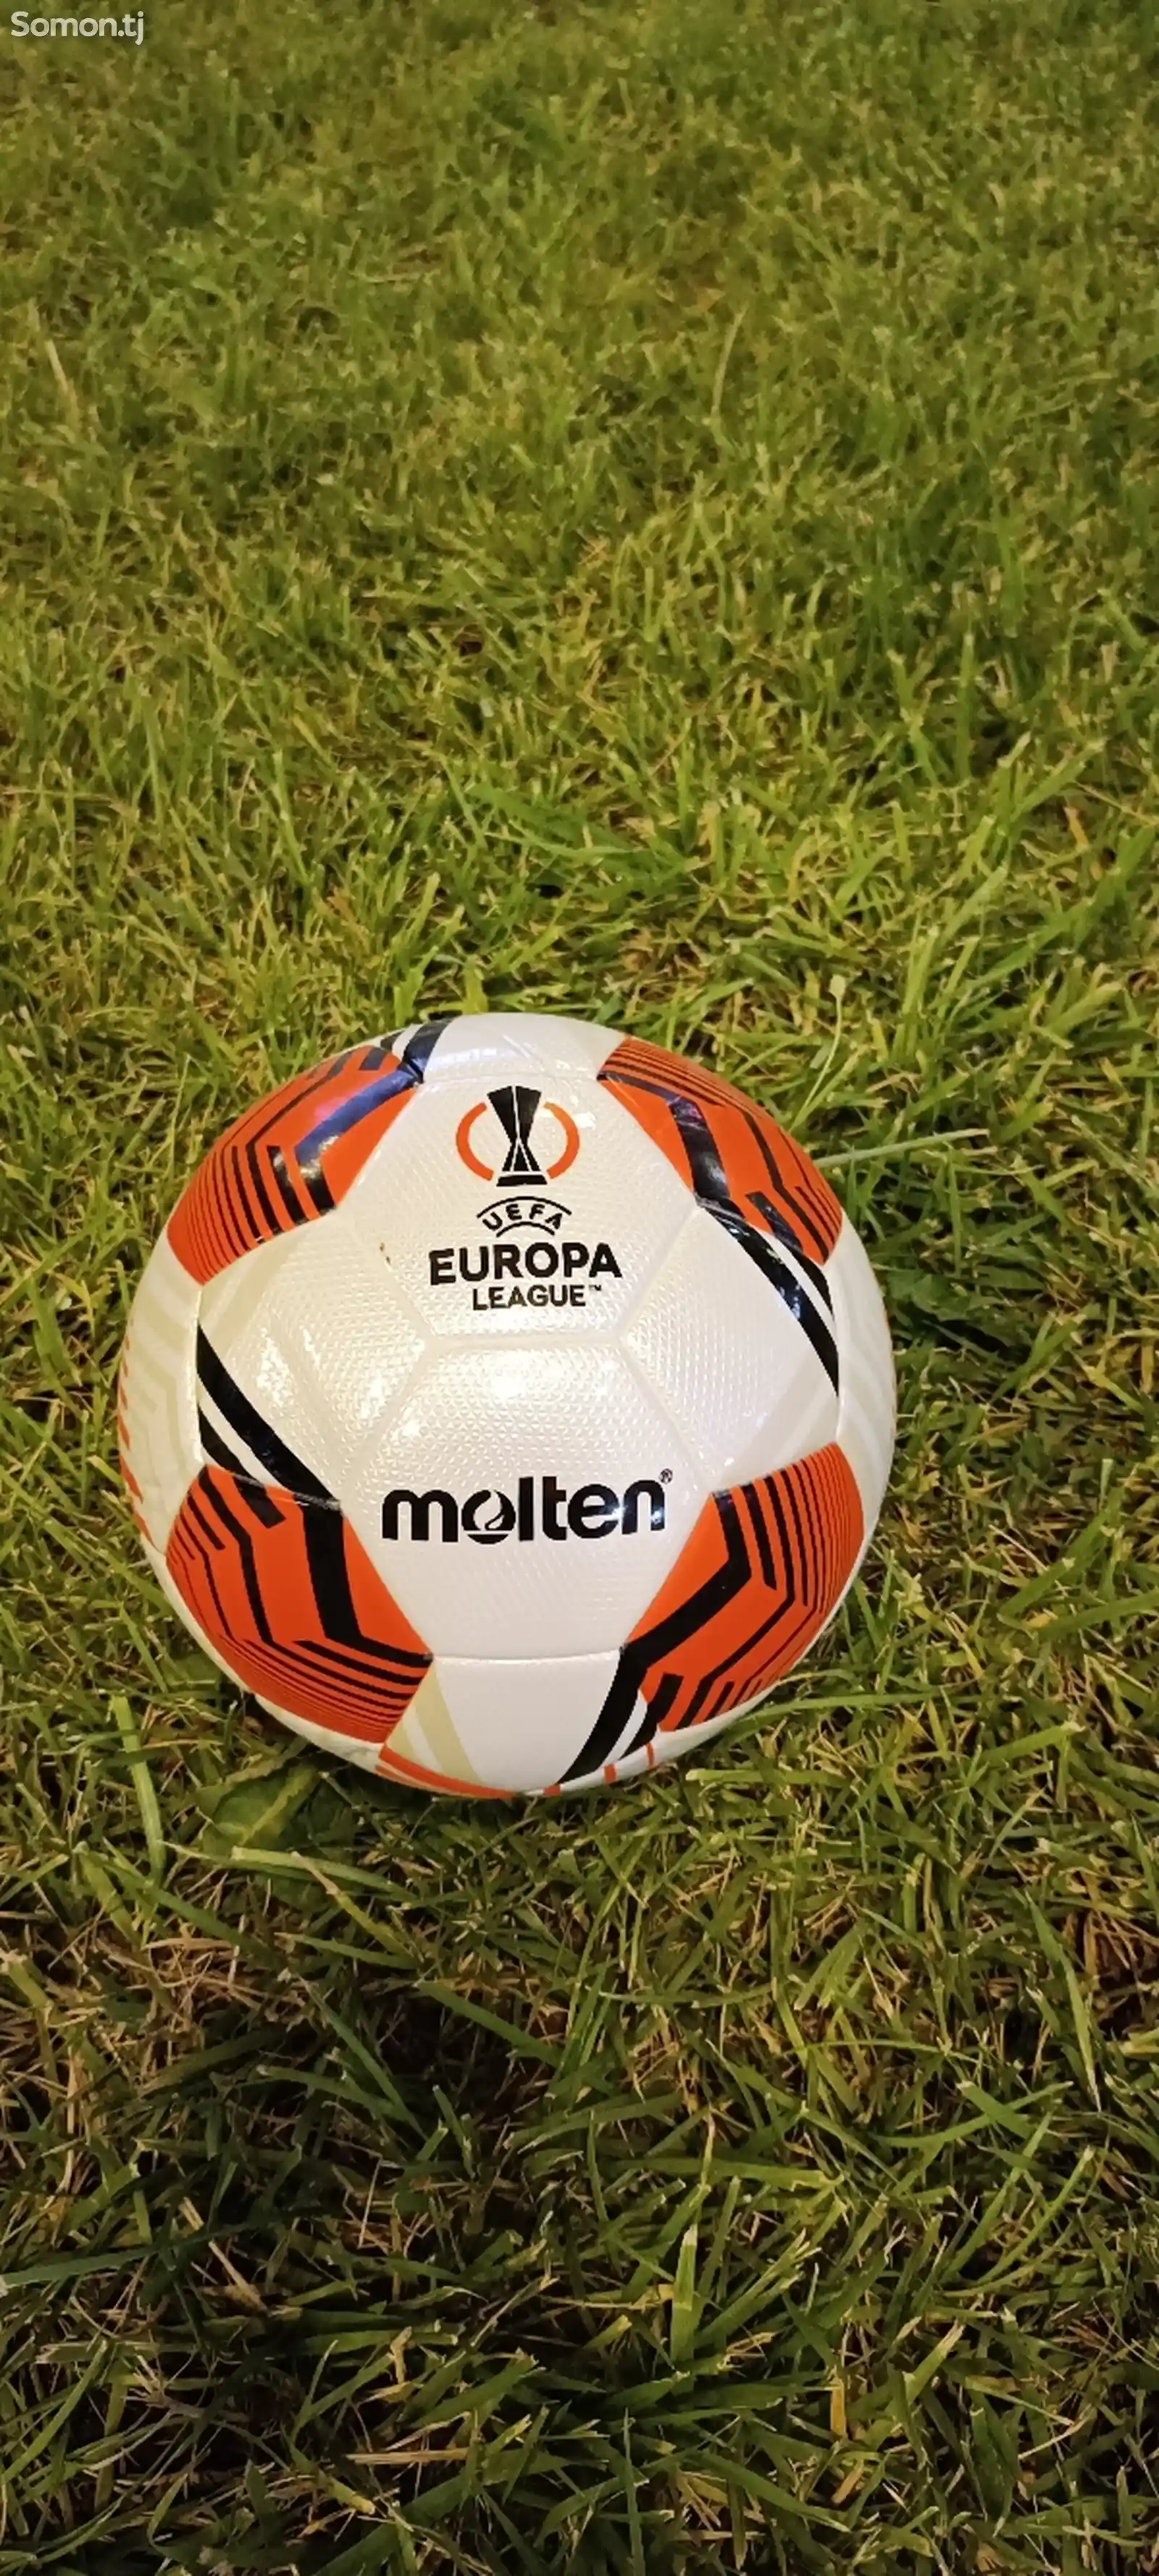 Мяч футбольный UEFA EUROPA LEAGUE molten-2